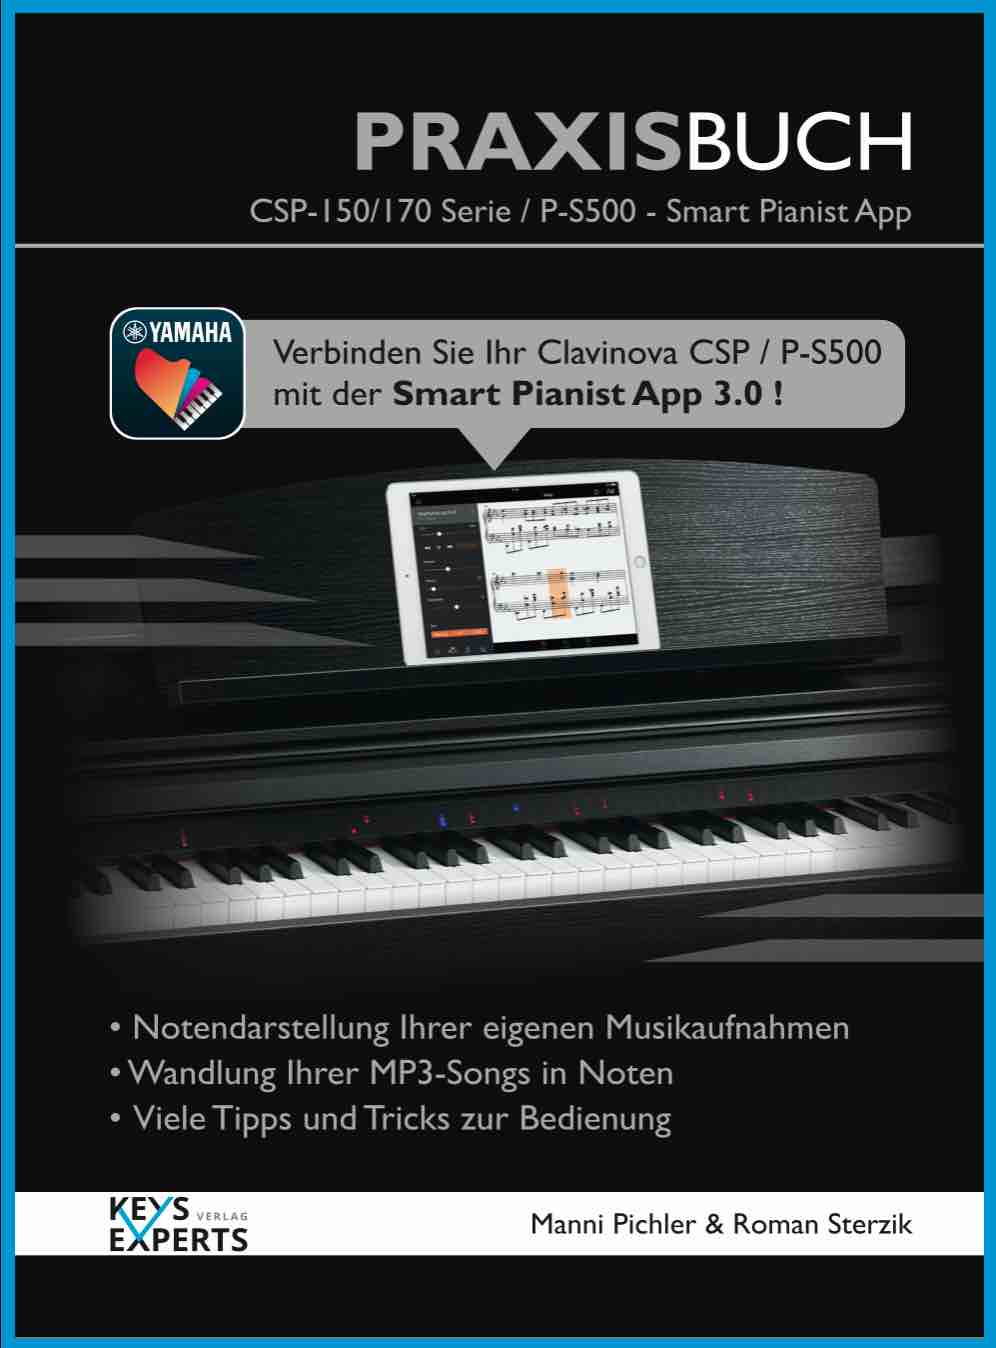 CSP-700, PS-500 Smart Pianist Praxisbuch1